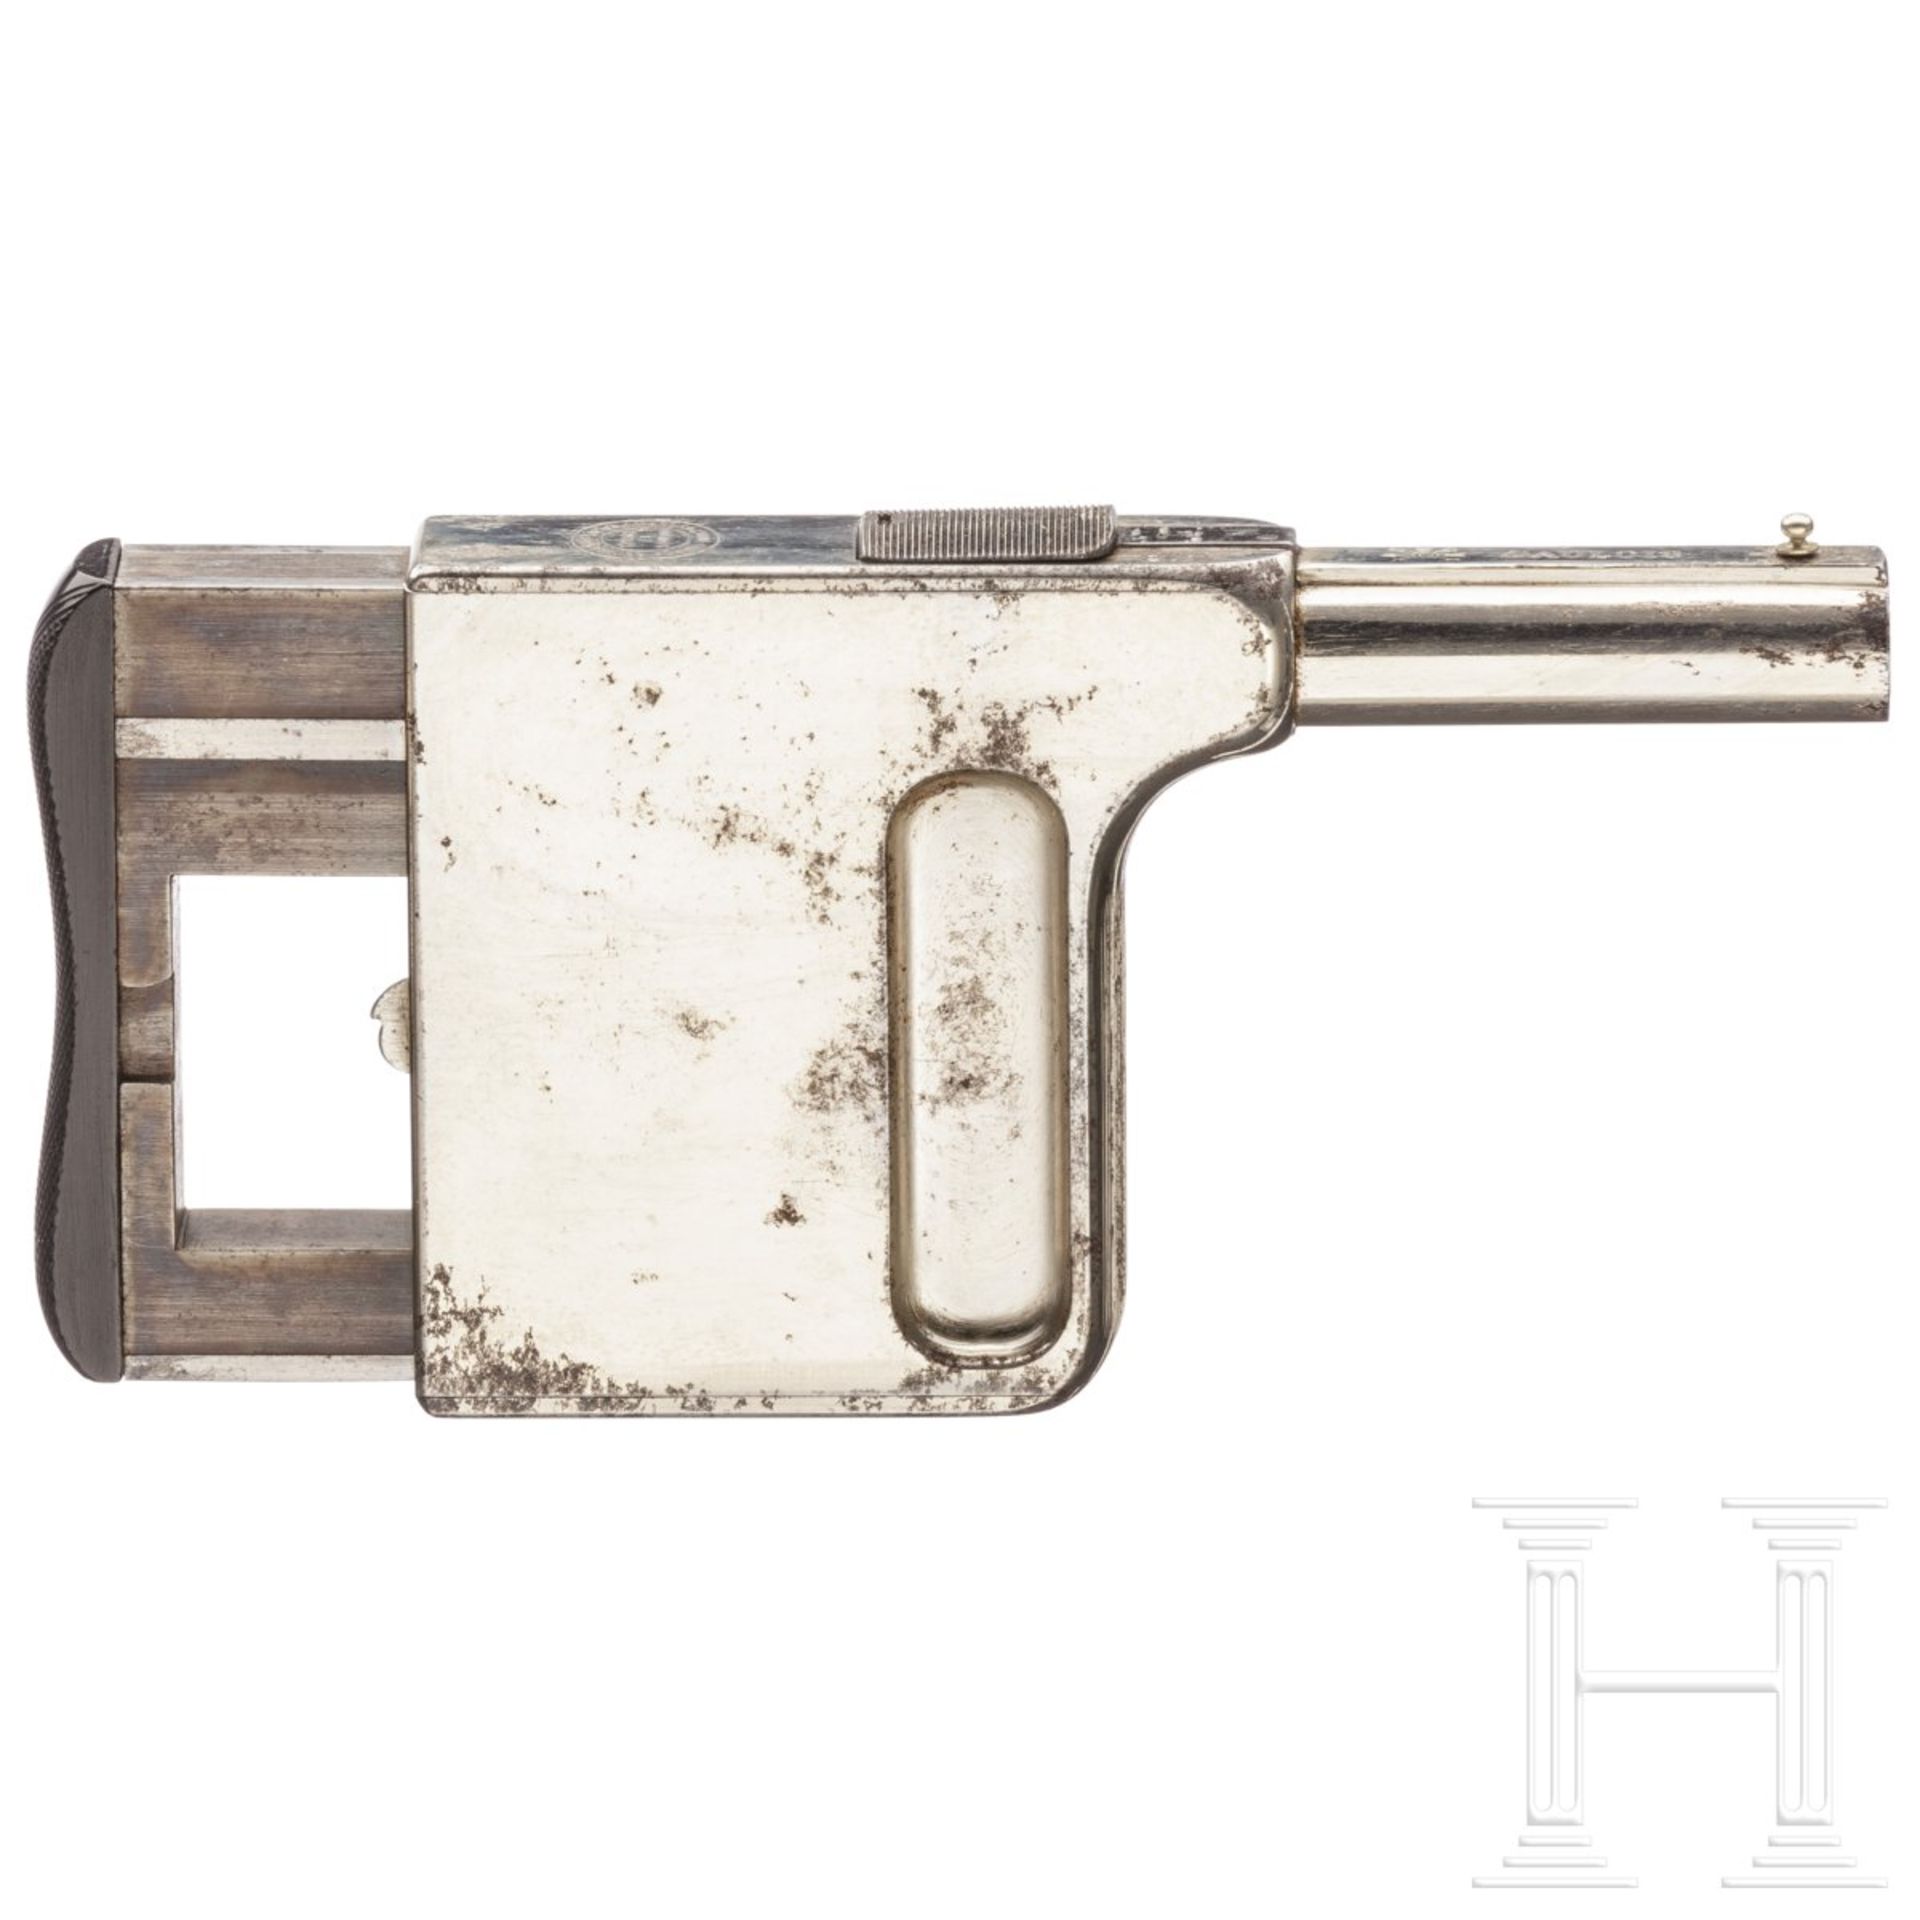 Gaulois-Handdruckpistole No. 1, St. Etienne, vernickelt - Bild 2 aus 2